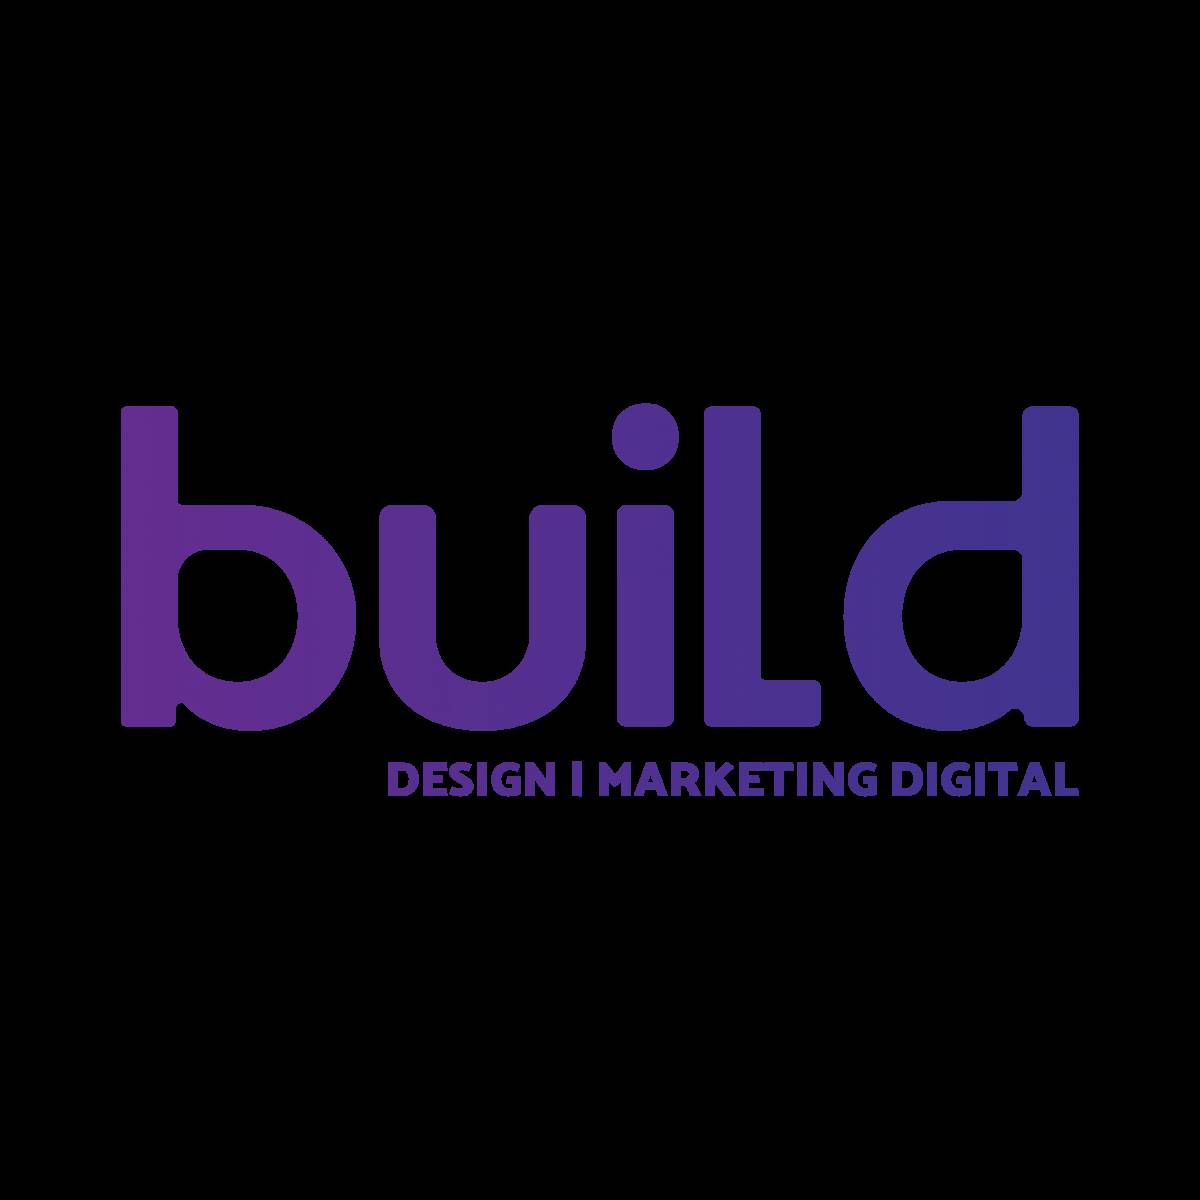 Build - Creative Design - Lisboa - Desenvolvimento de Software Mobile